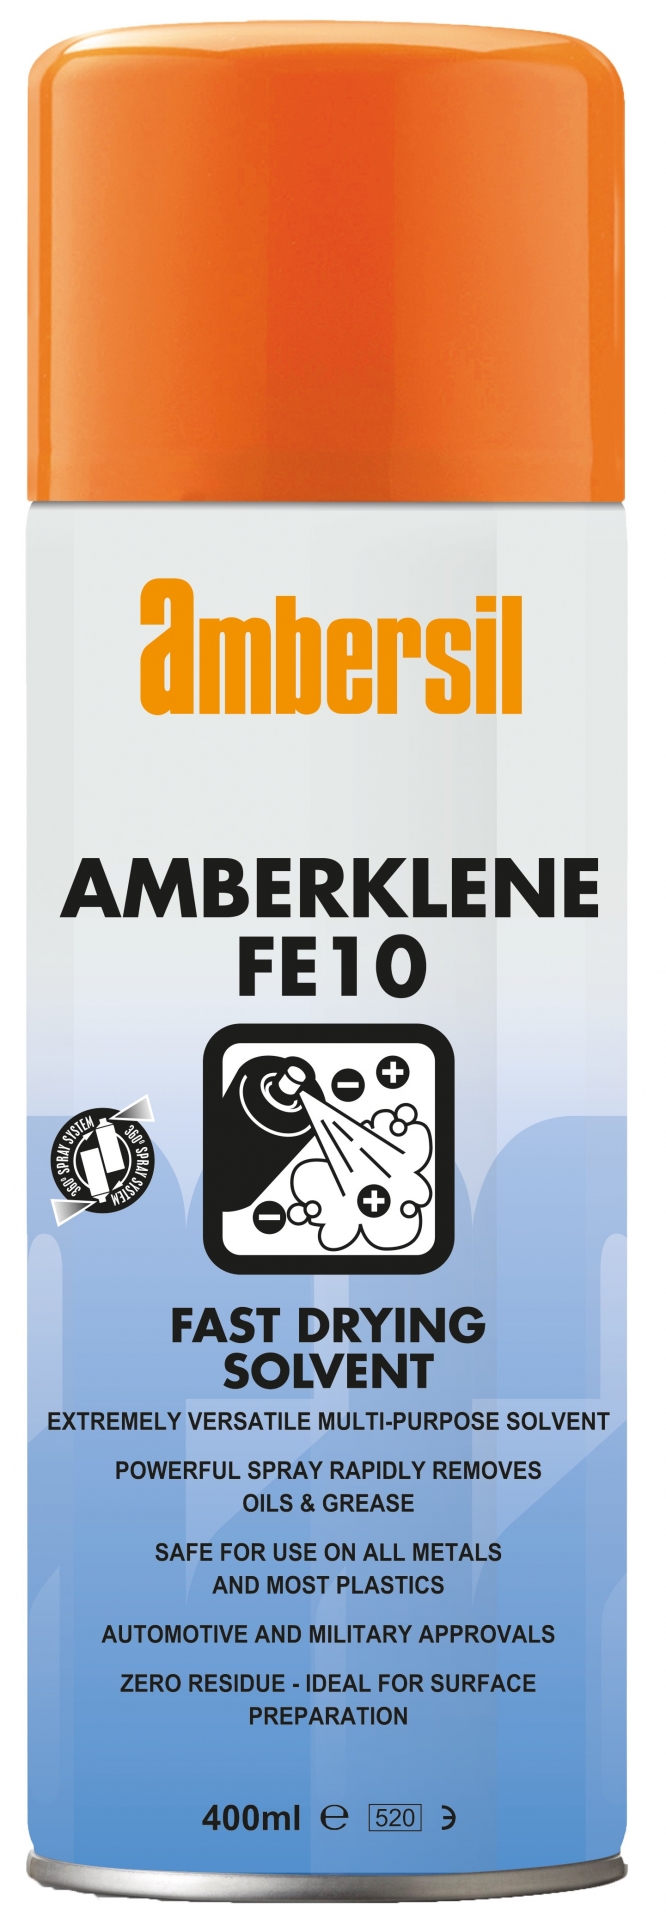 AMBERKLENE FE10